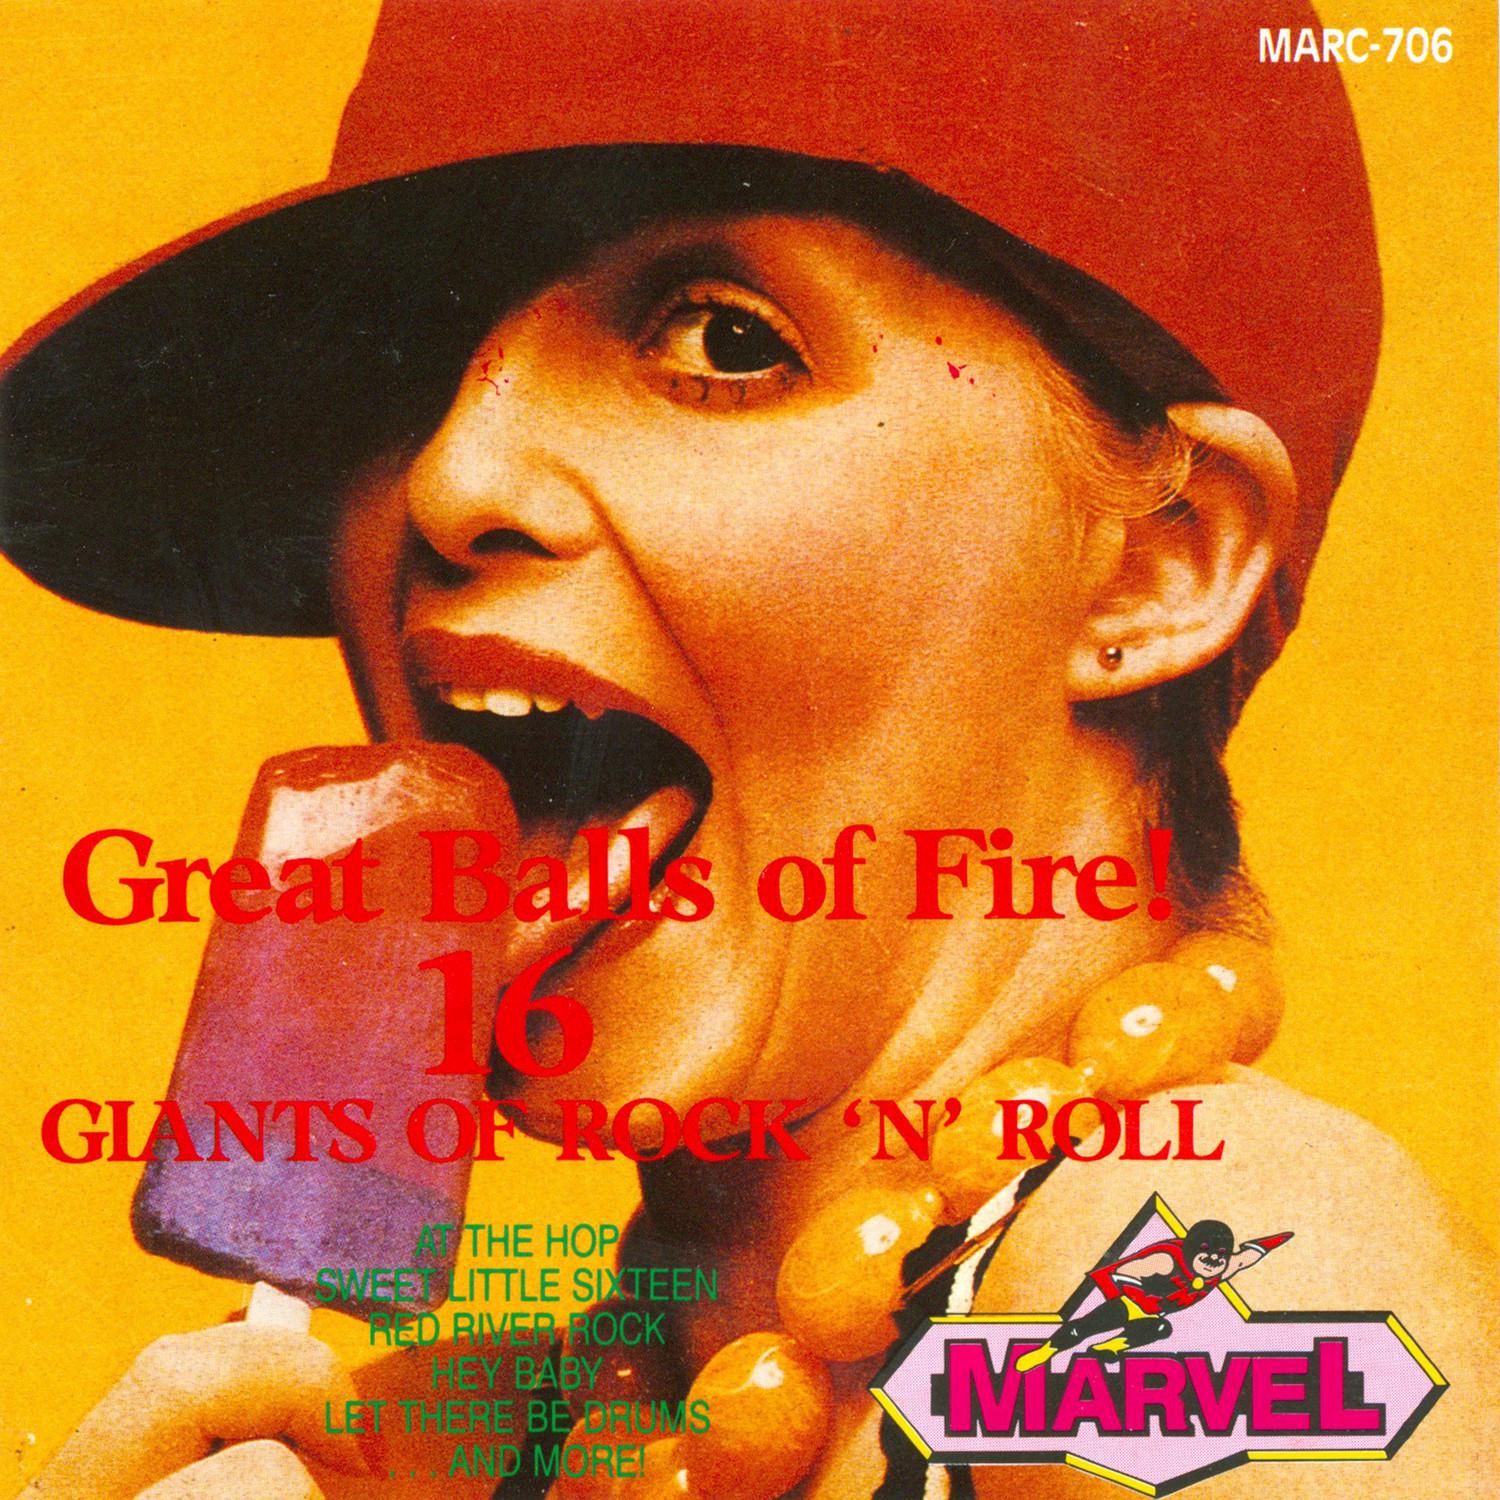 Great Balls of Fire - 16 Giants of Rock 'n' Roll